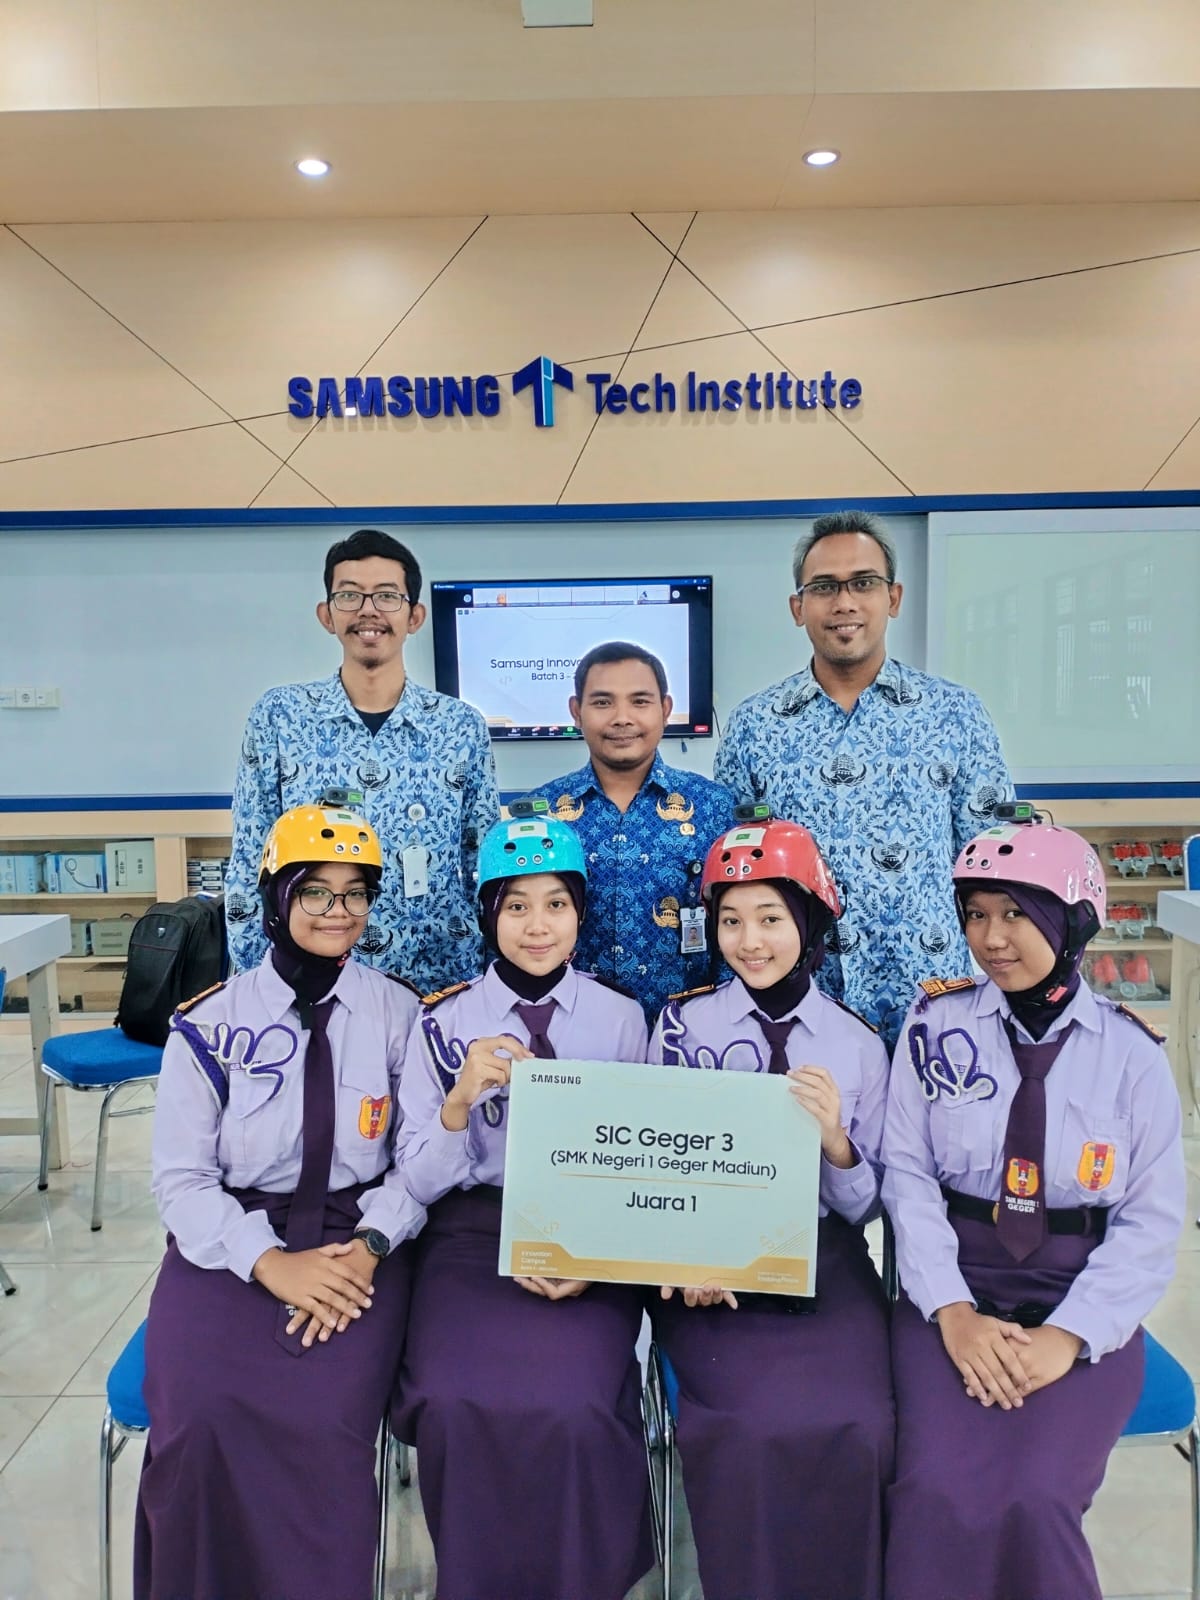 Juara 1 Samsung Innovation Campus Batch 3 2022